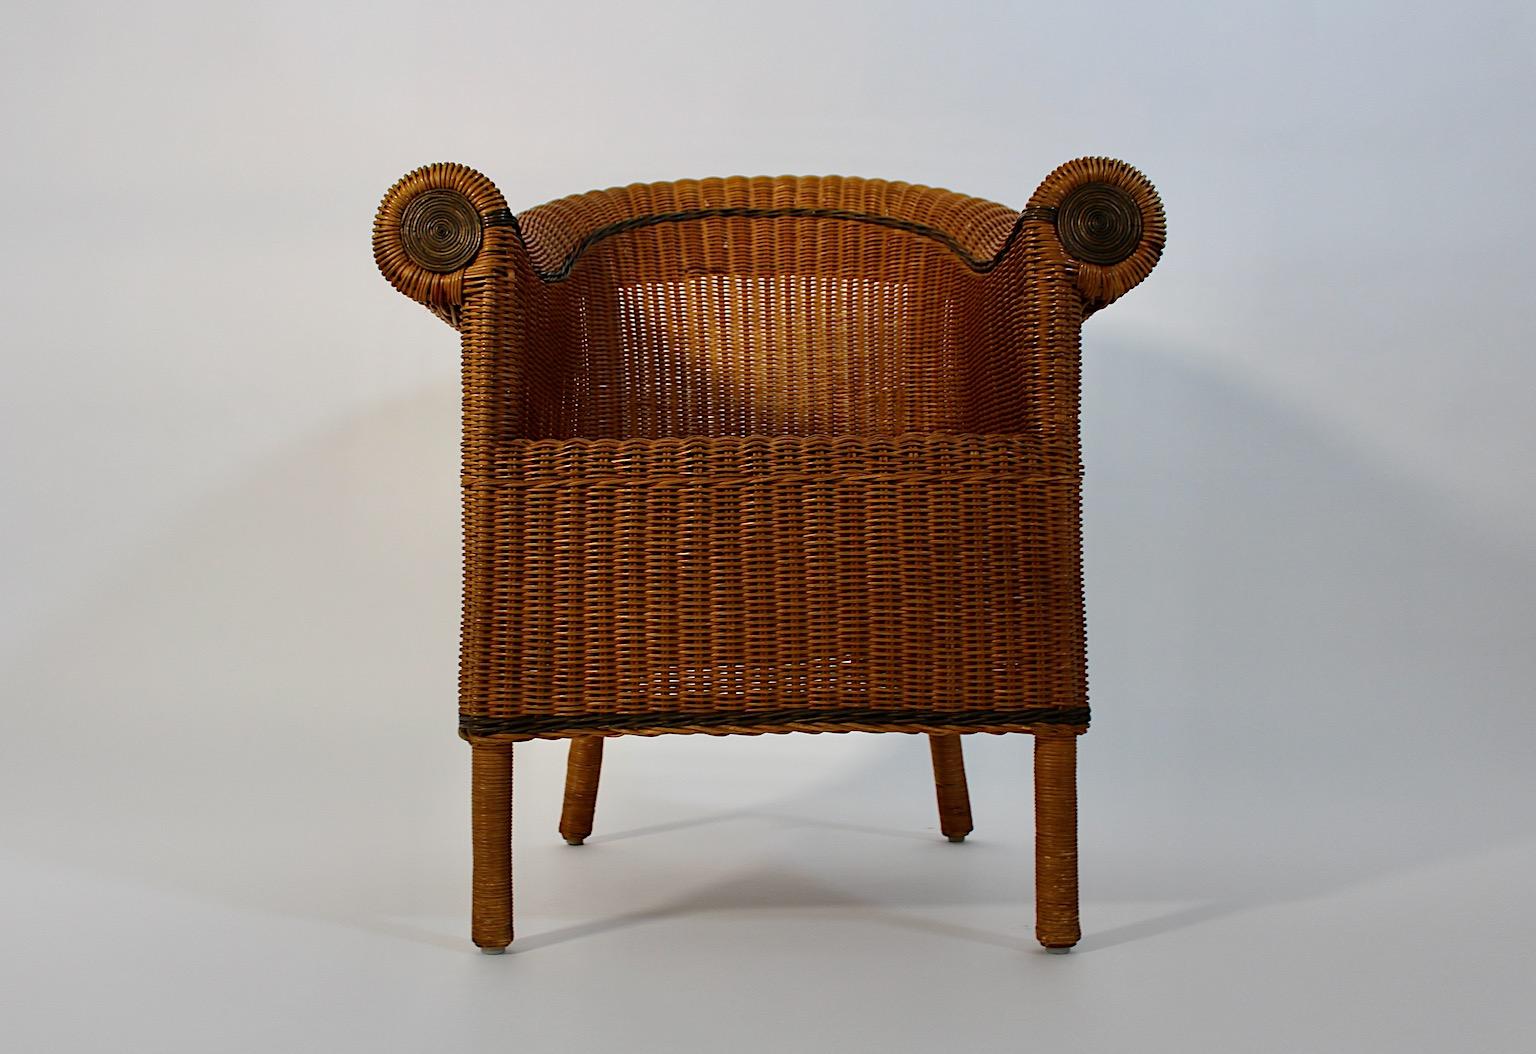 Early 20th Century Jugendstil Vintage Rattan Armchair Lounge Chair Prag-Rudniker Korbwaren c 1910 For Sale